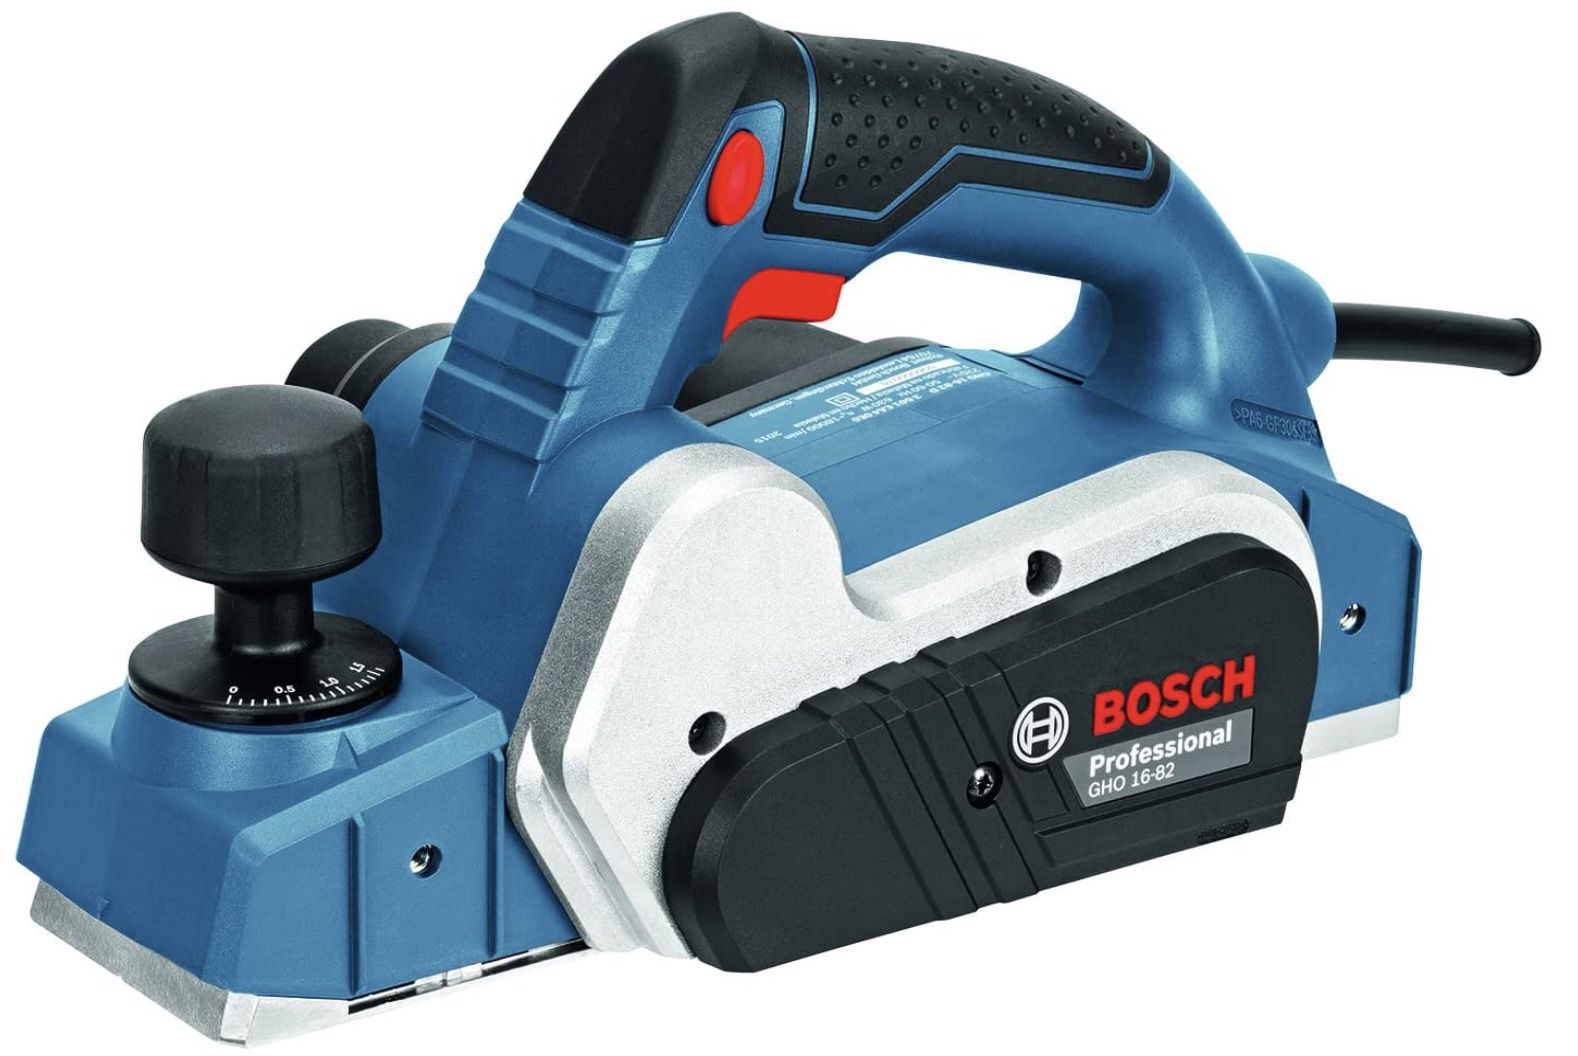 Bosch Professional Handhobel GHO 16 82 inkl. Parallelanschlag für 96,15€ (statt 116€)